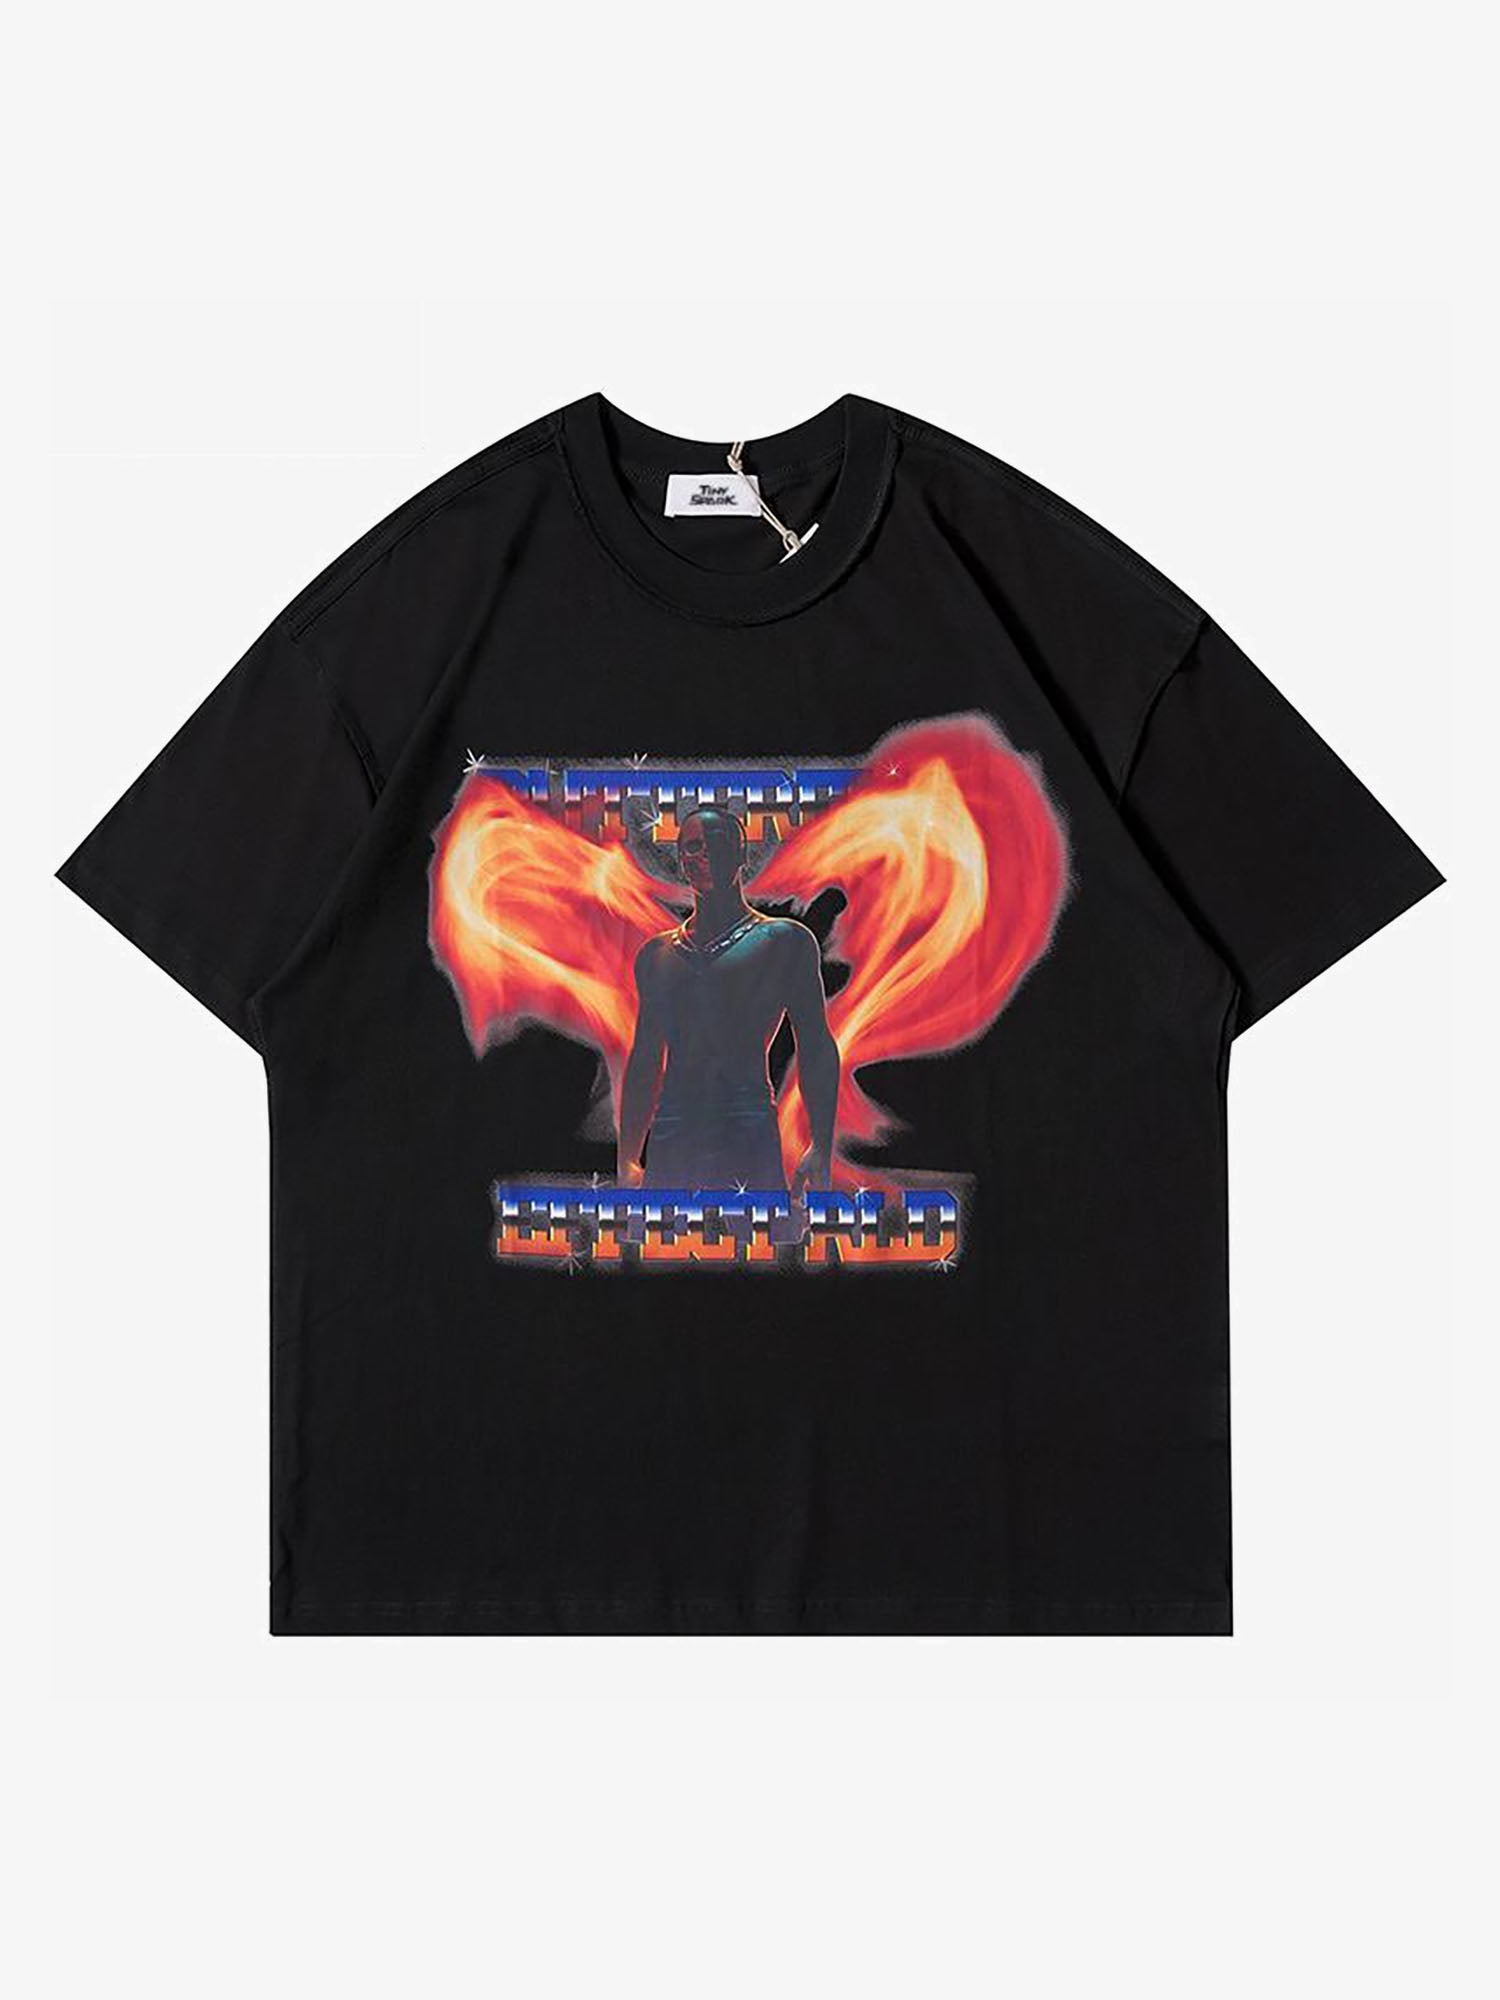 Justnotag T-shirt à manches courtes à imprimé lettre Superman Flames